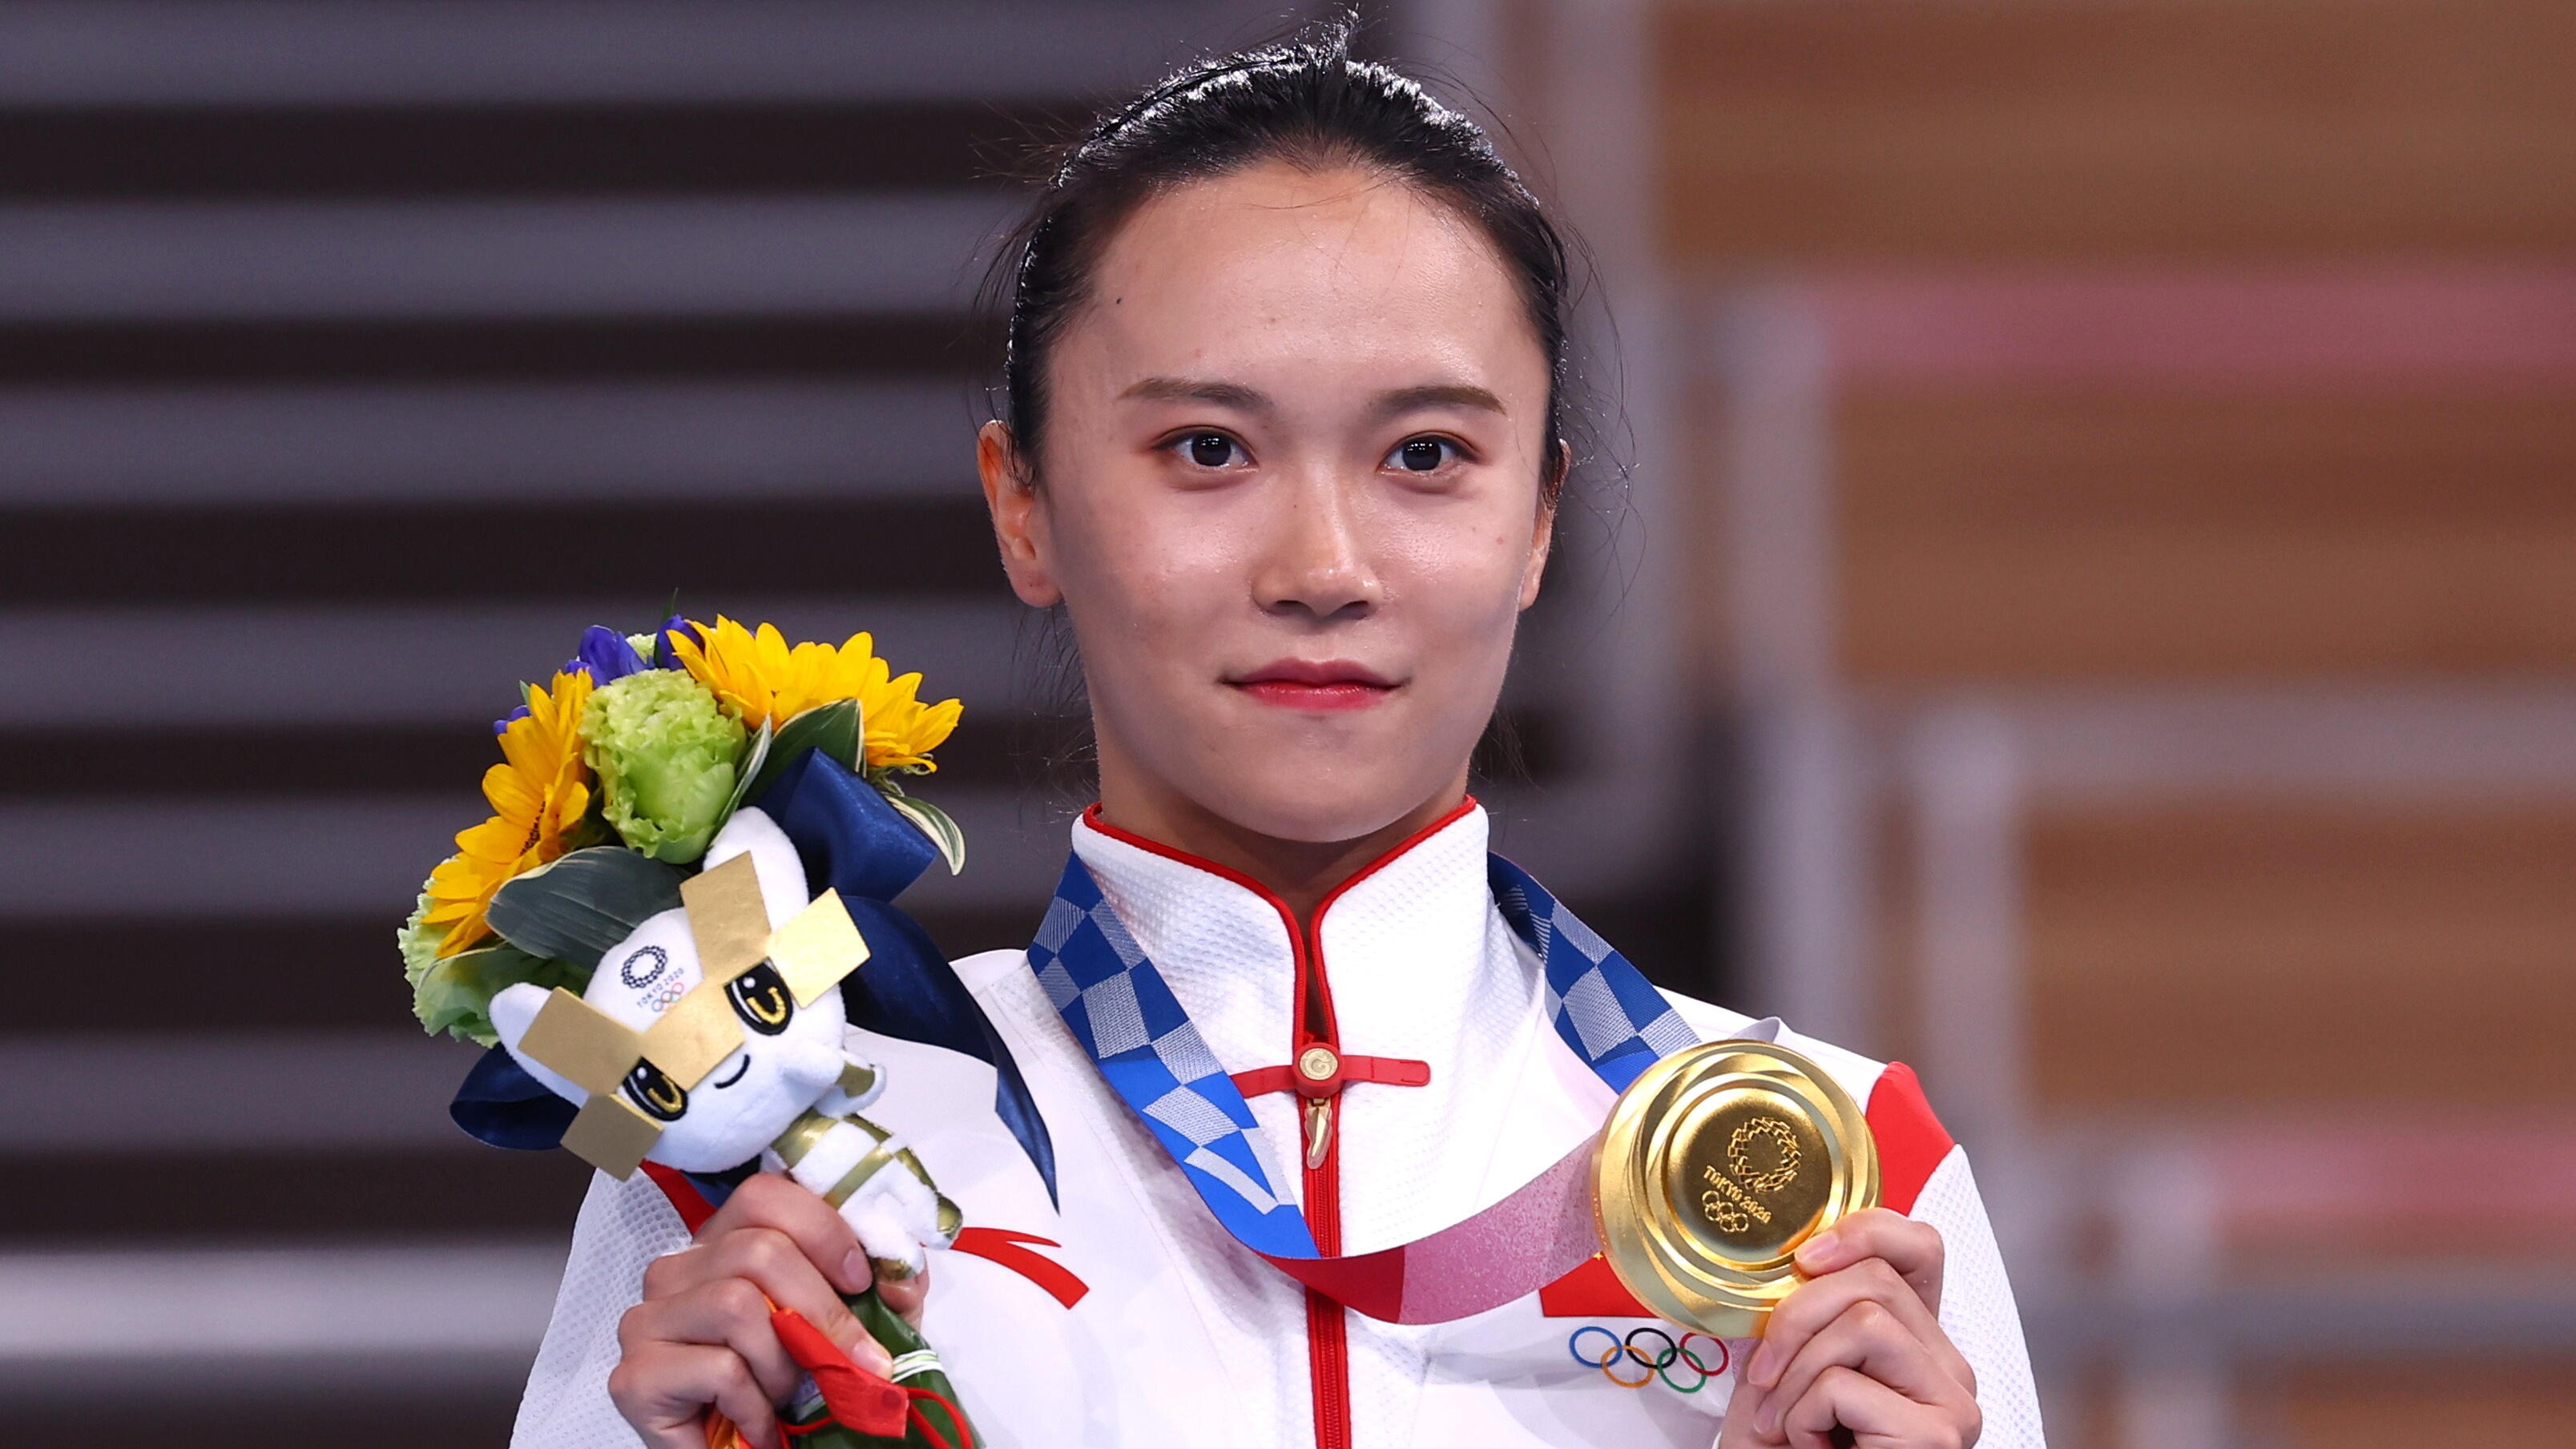 東京五輪の金メダルは 低品質 中国メディアが指摘 自国選手の メッキ剥げ 騒動めぐり J Cast ニュース 全文表示